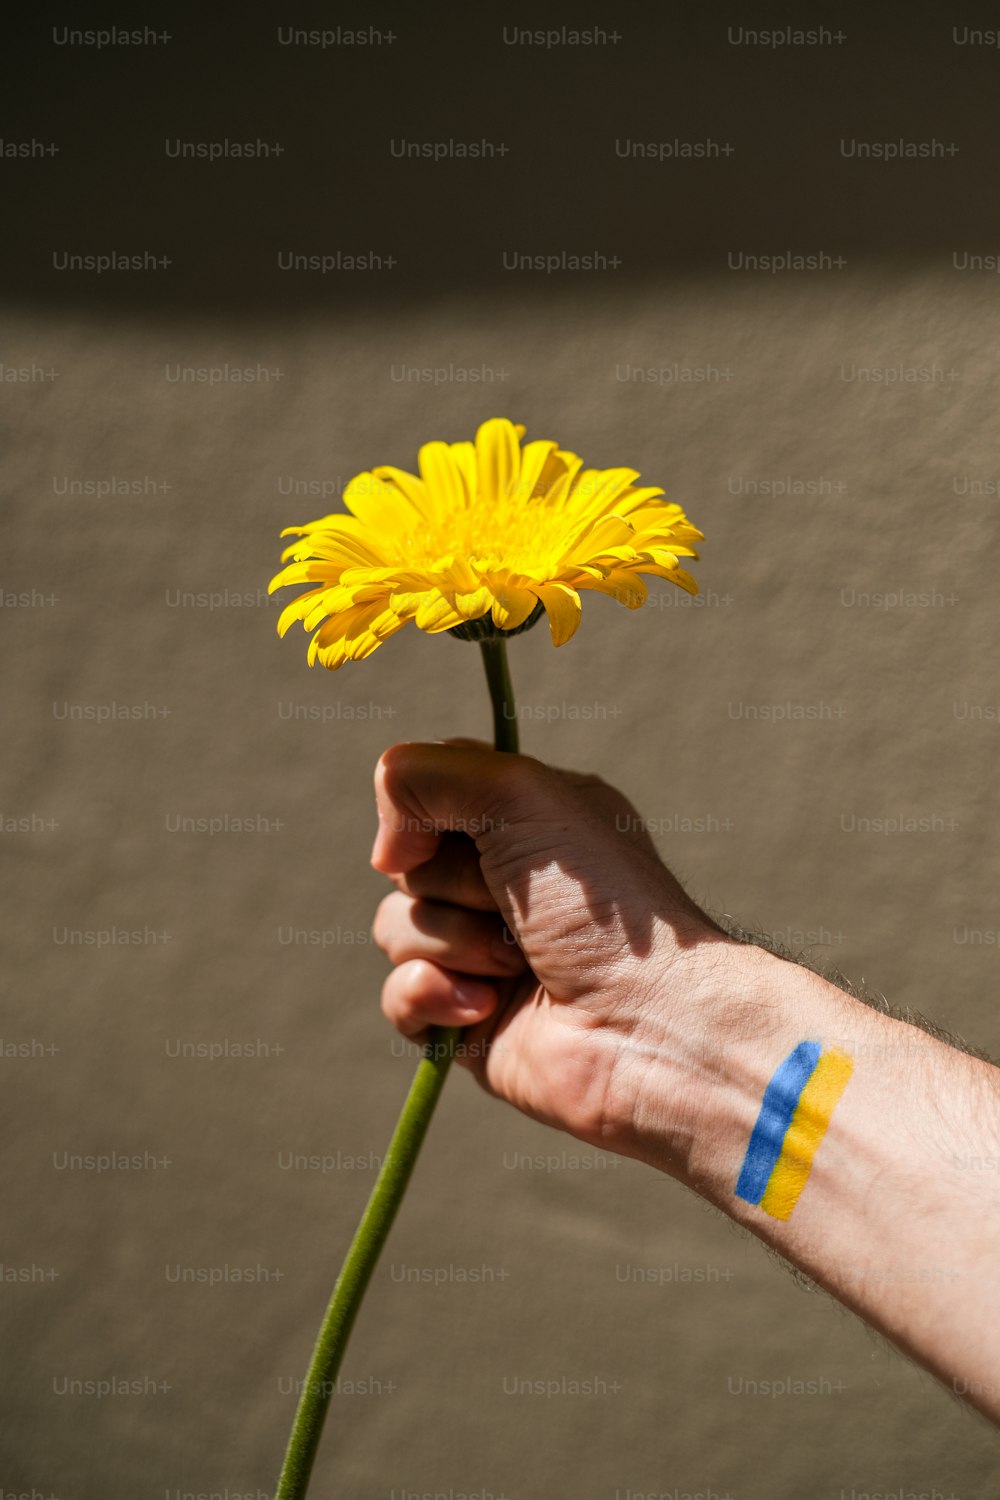 파란색 줄무늬가 있는 노란색 꽃을 들고 있는 손